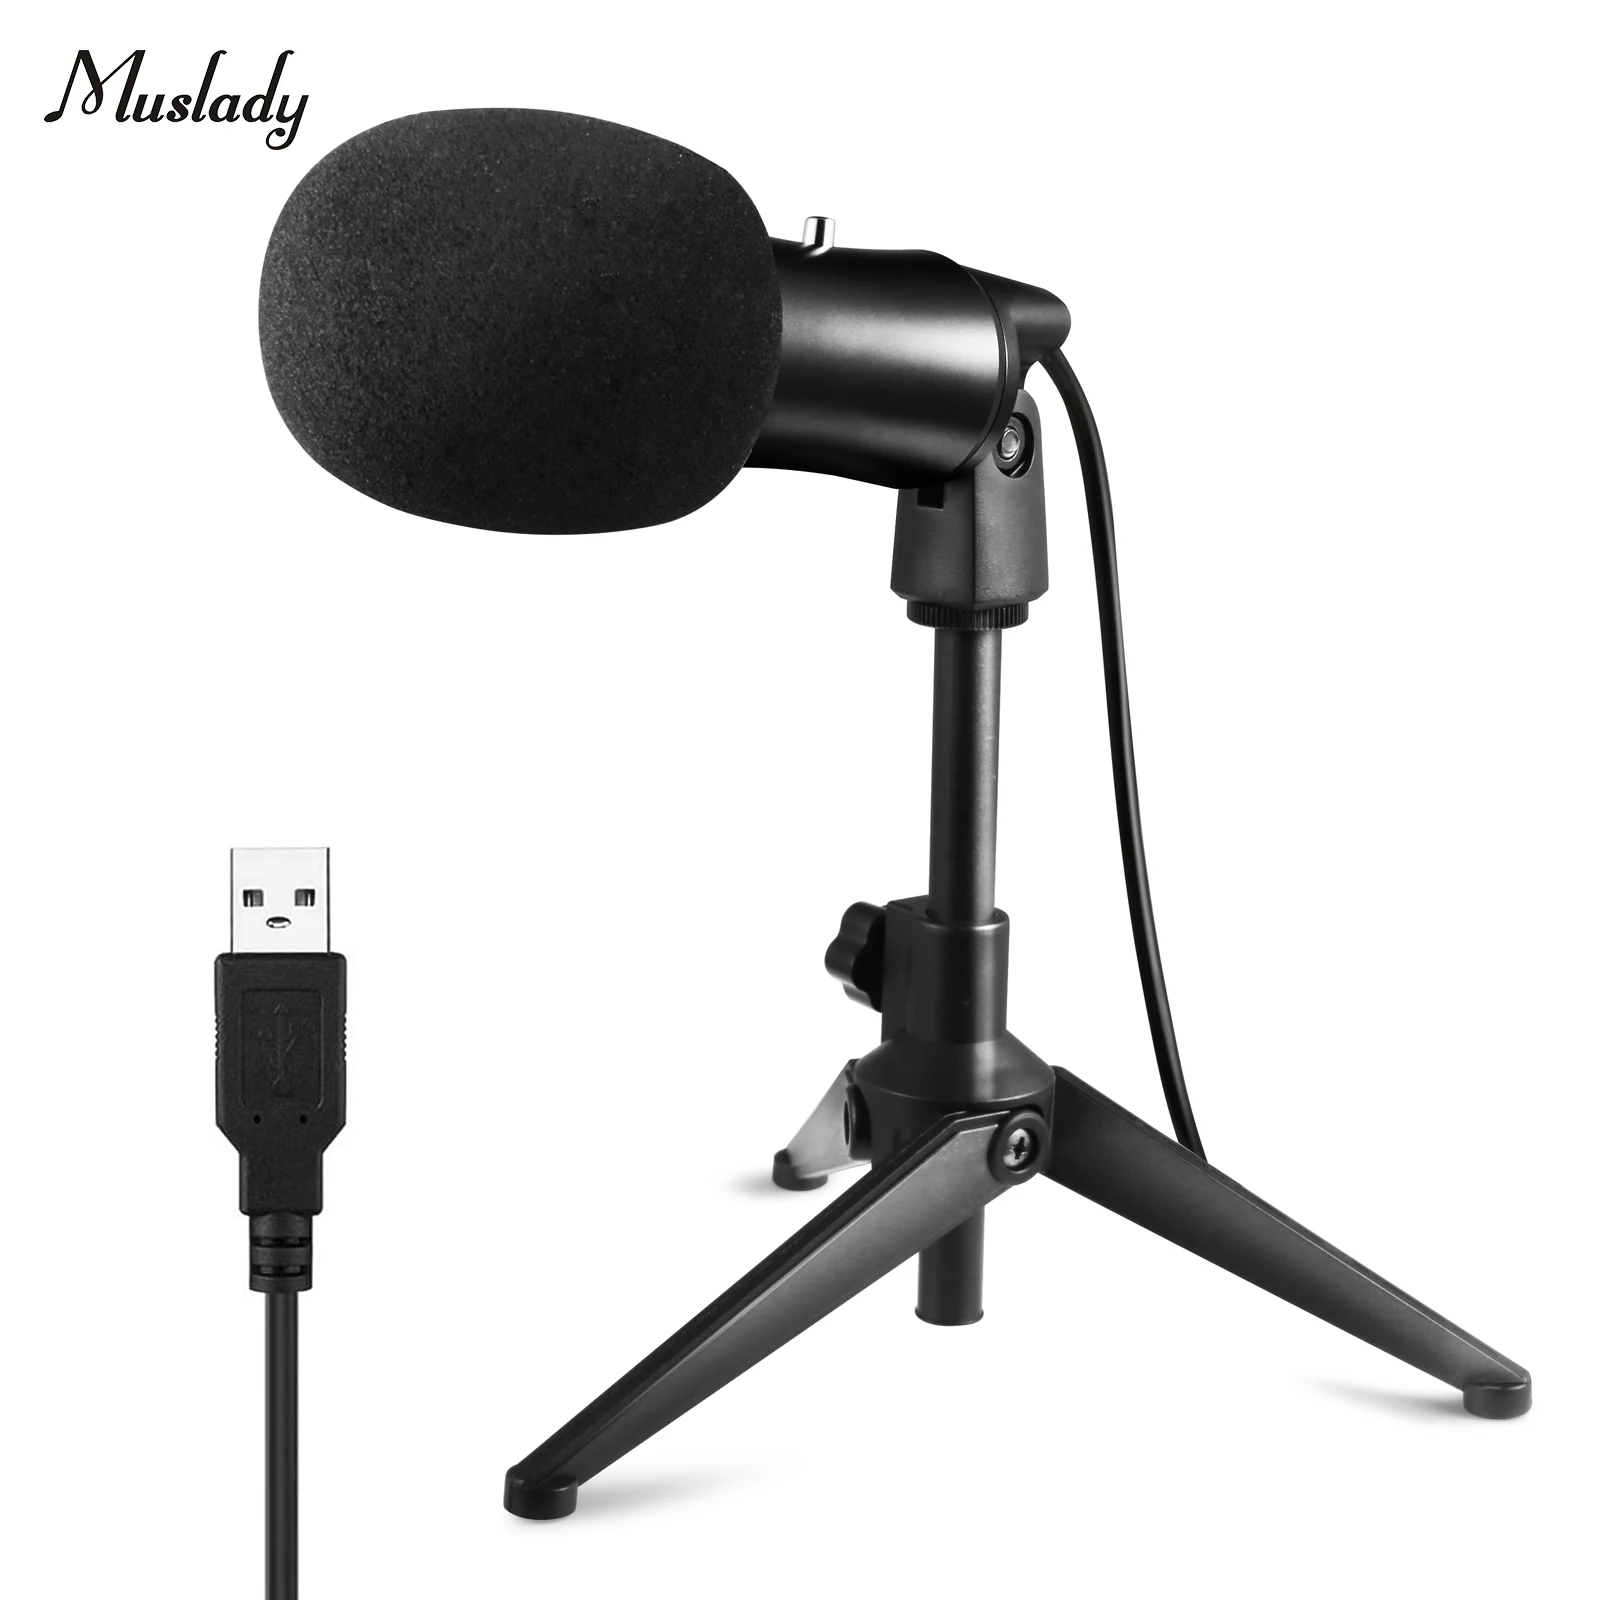 

Проводной USB-микрофон Muslady для компьютера, конденсаторный микрофон для ноутбука с настольным мини-штативом, подставкой и ветровым стеклом д...